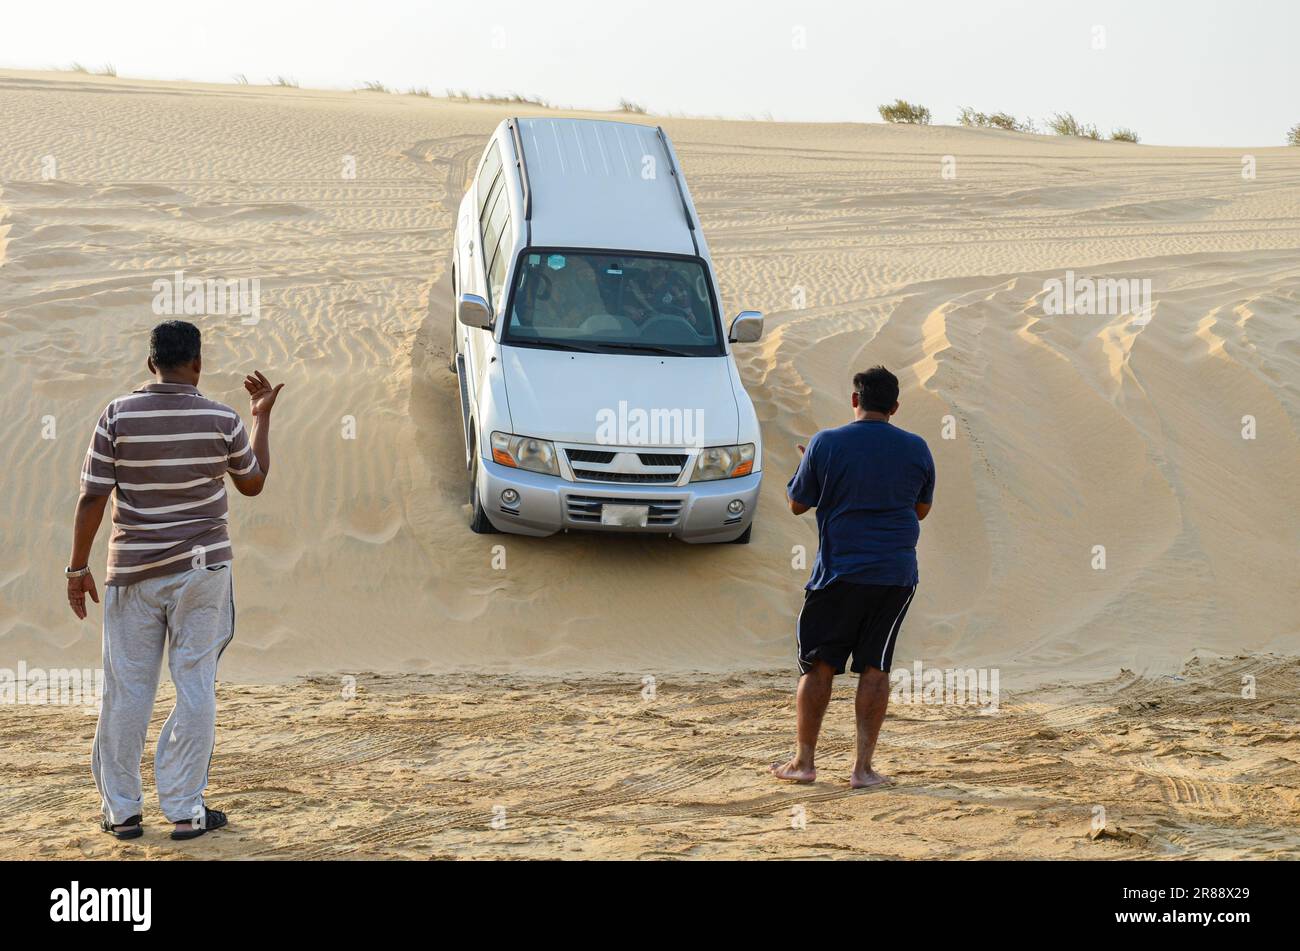 Safari dans le désert au Qatar - dunes de sable ballottement Banque D'Images